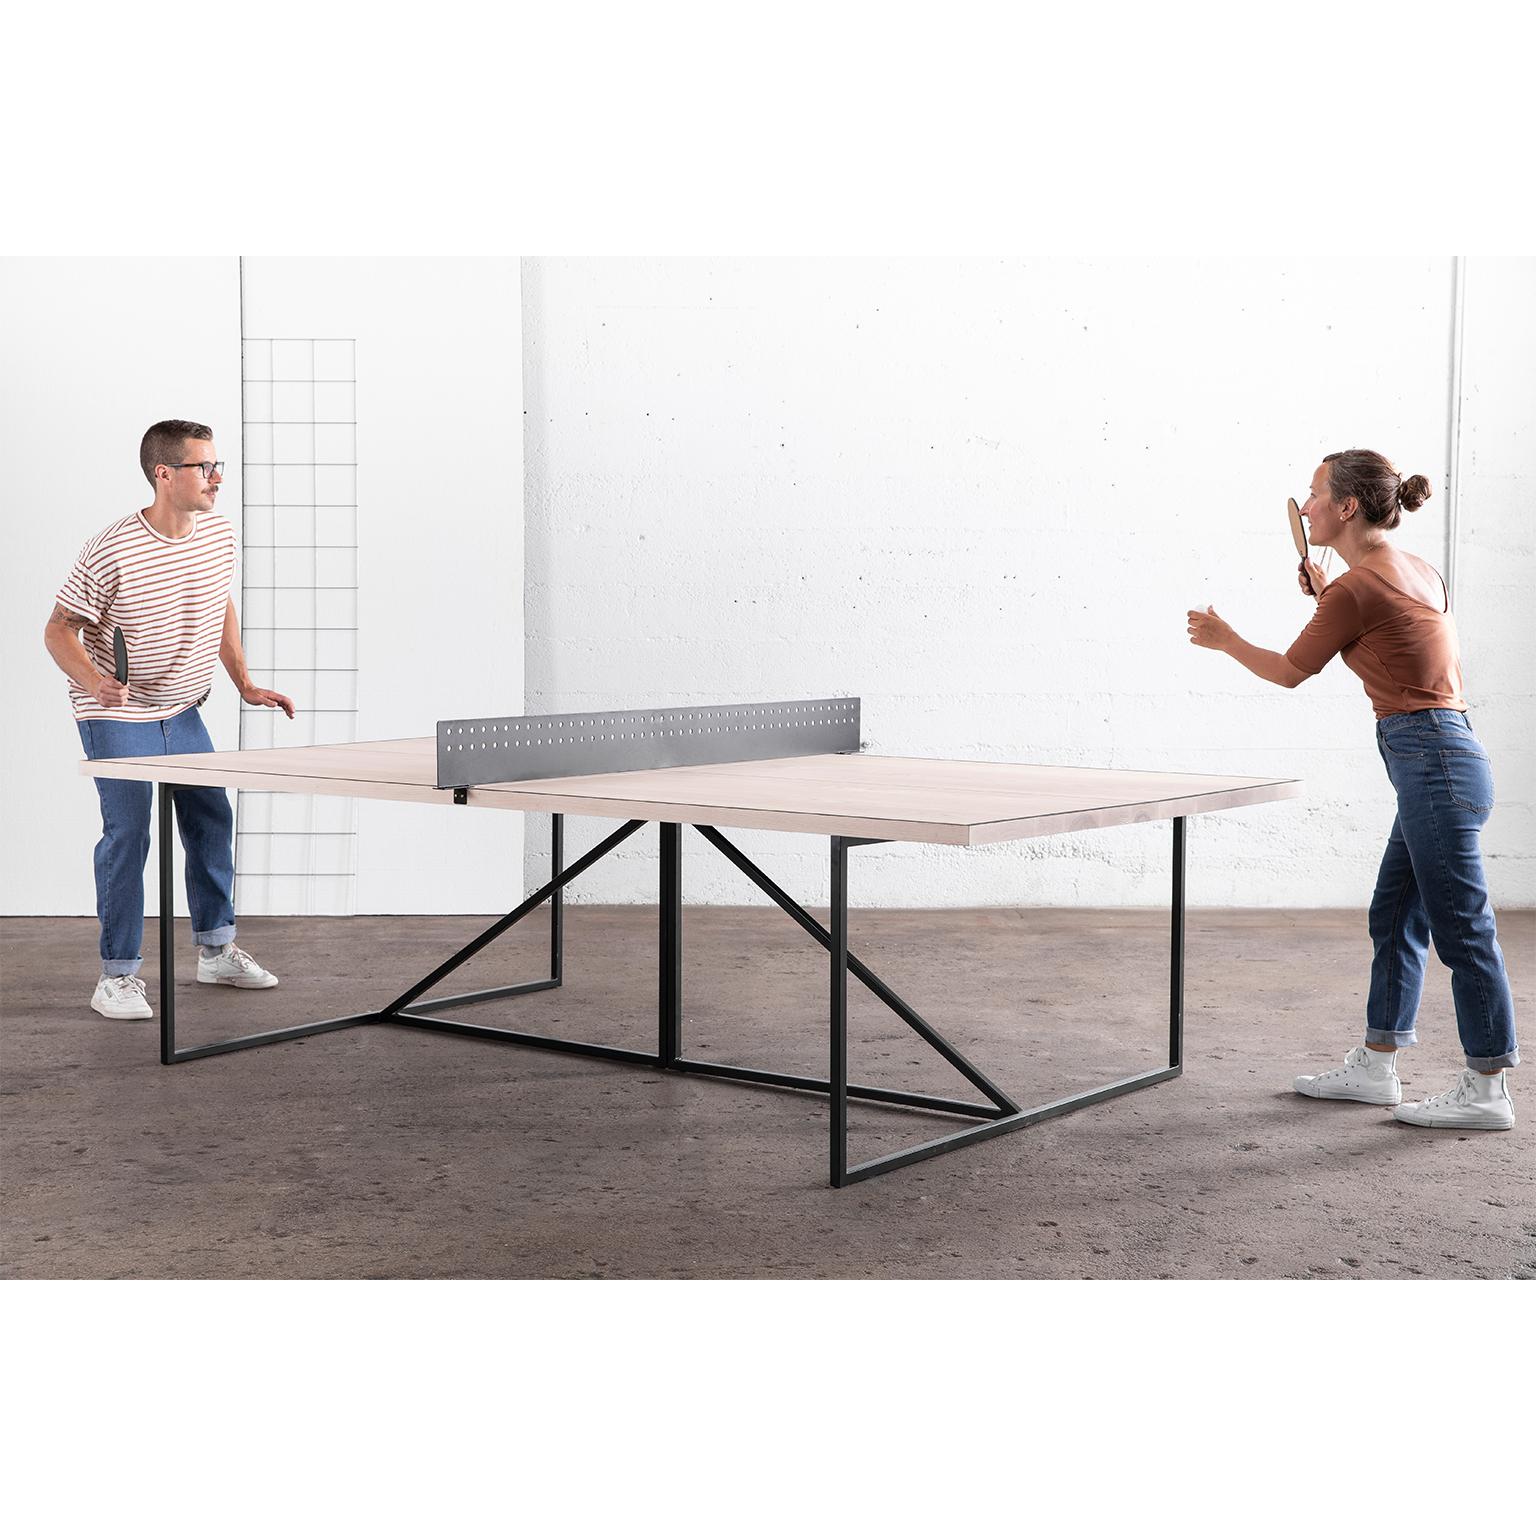 Der Break Ping Pong Tisch verleiht dem klassischen Gesellschaftsspiel einen modernen Look.

Das Gestell des Tisches ist aus langlebigem Stahl handgeschweißt und kann in einer unserer drei Metallvarianten ausgeführt werden. Der Tisch ist durch ein